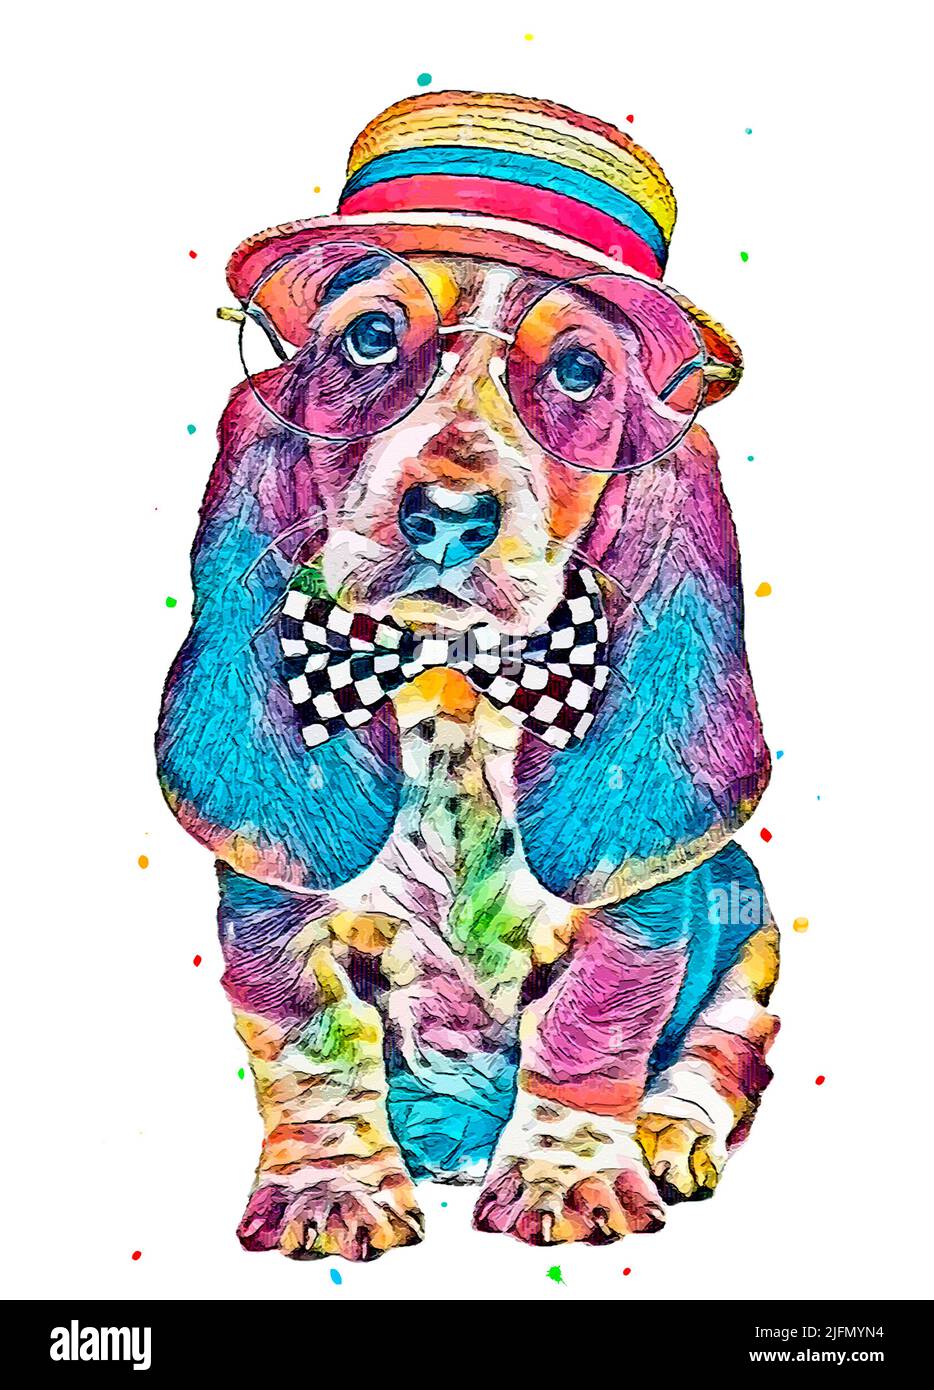 Un portrait amusant d'illustration de triste chien courant coloré avec chapeau coloré Banque D'Images